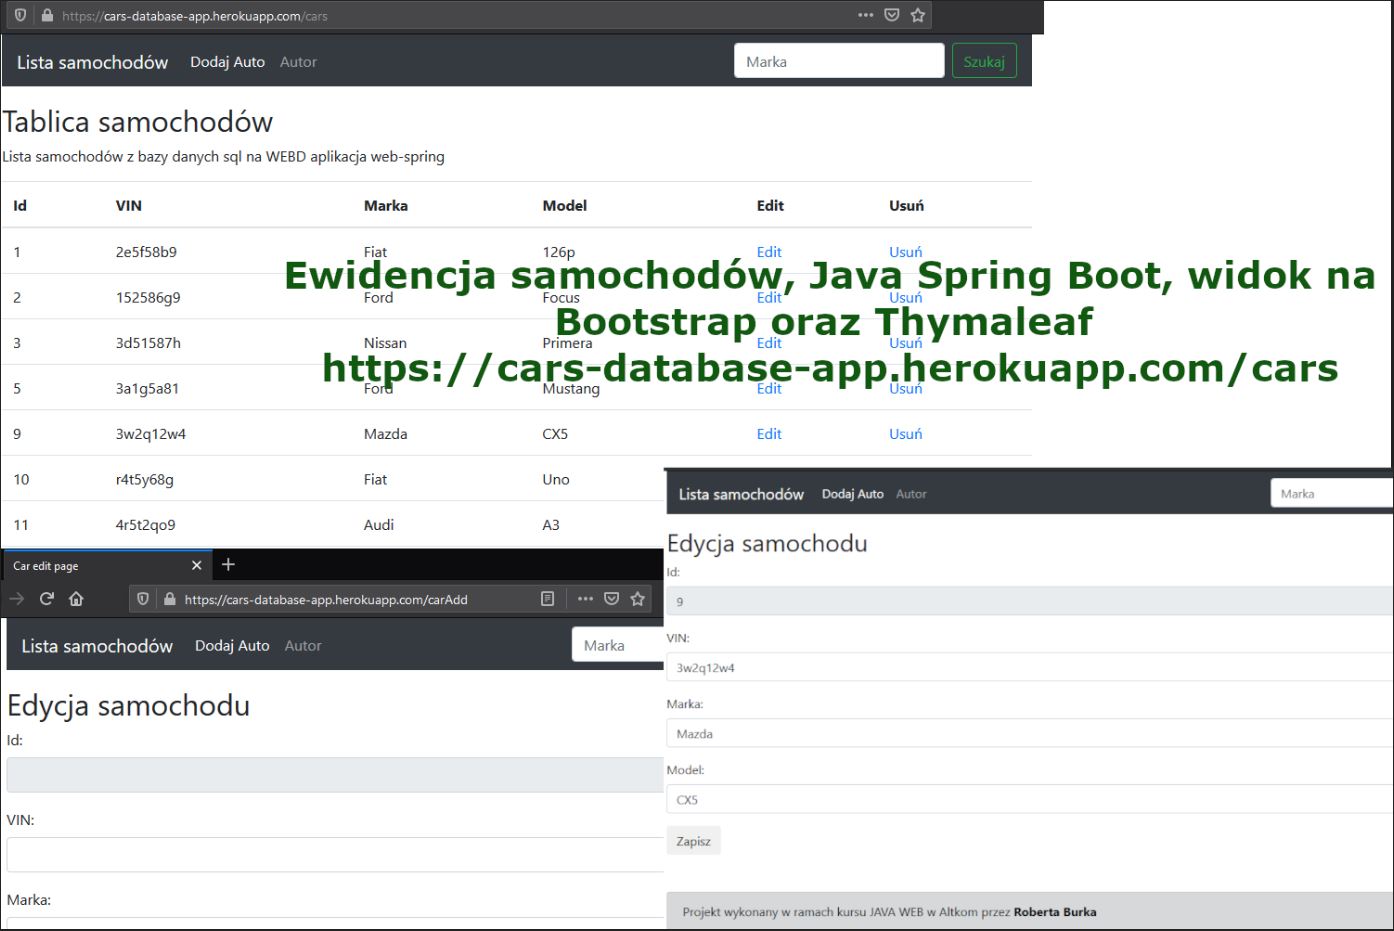 Ewidencja samochodów. Java Spring Boot, widok na Bootstrap oraz Thymaleaf, opublikowana na HerokuApp.